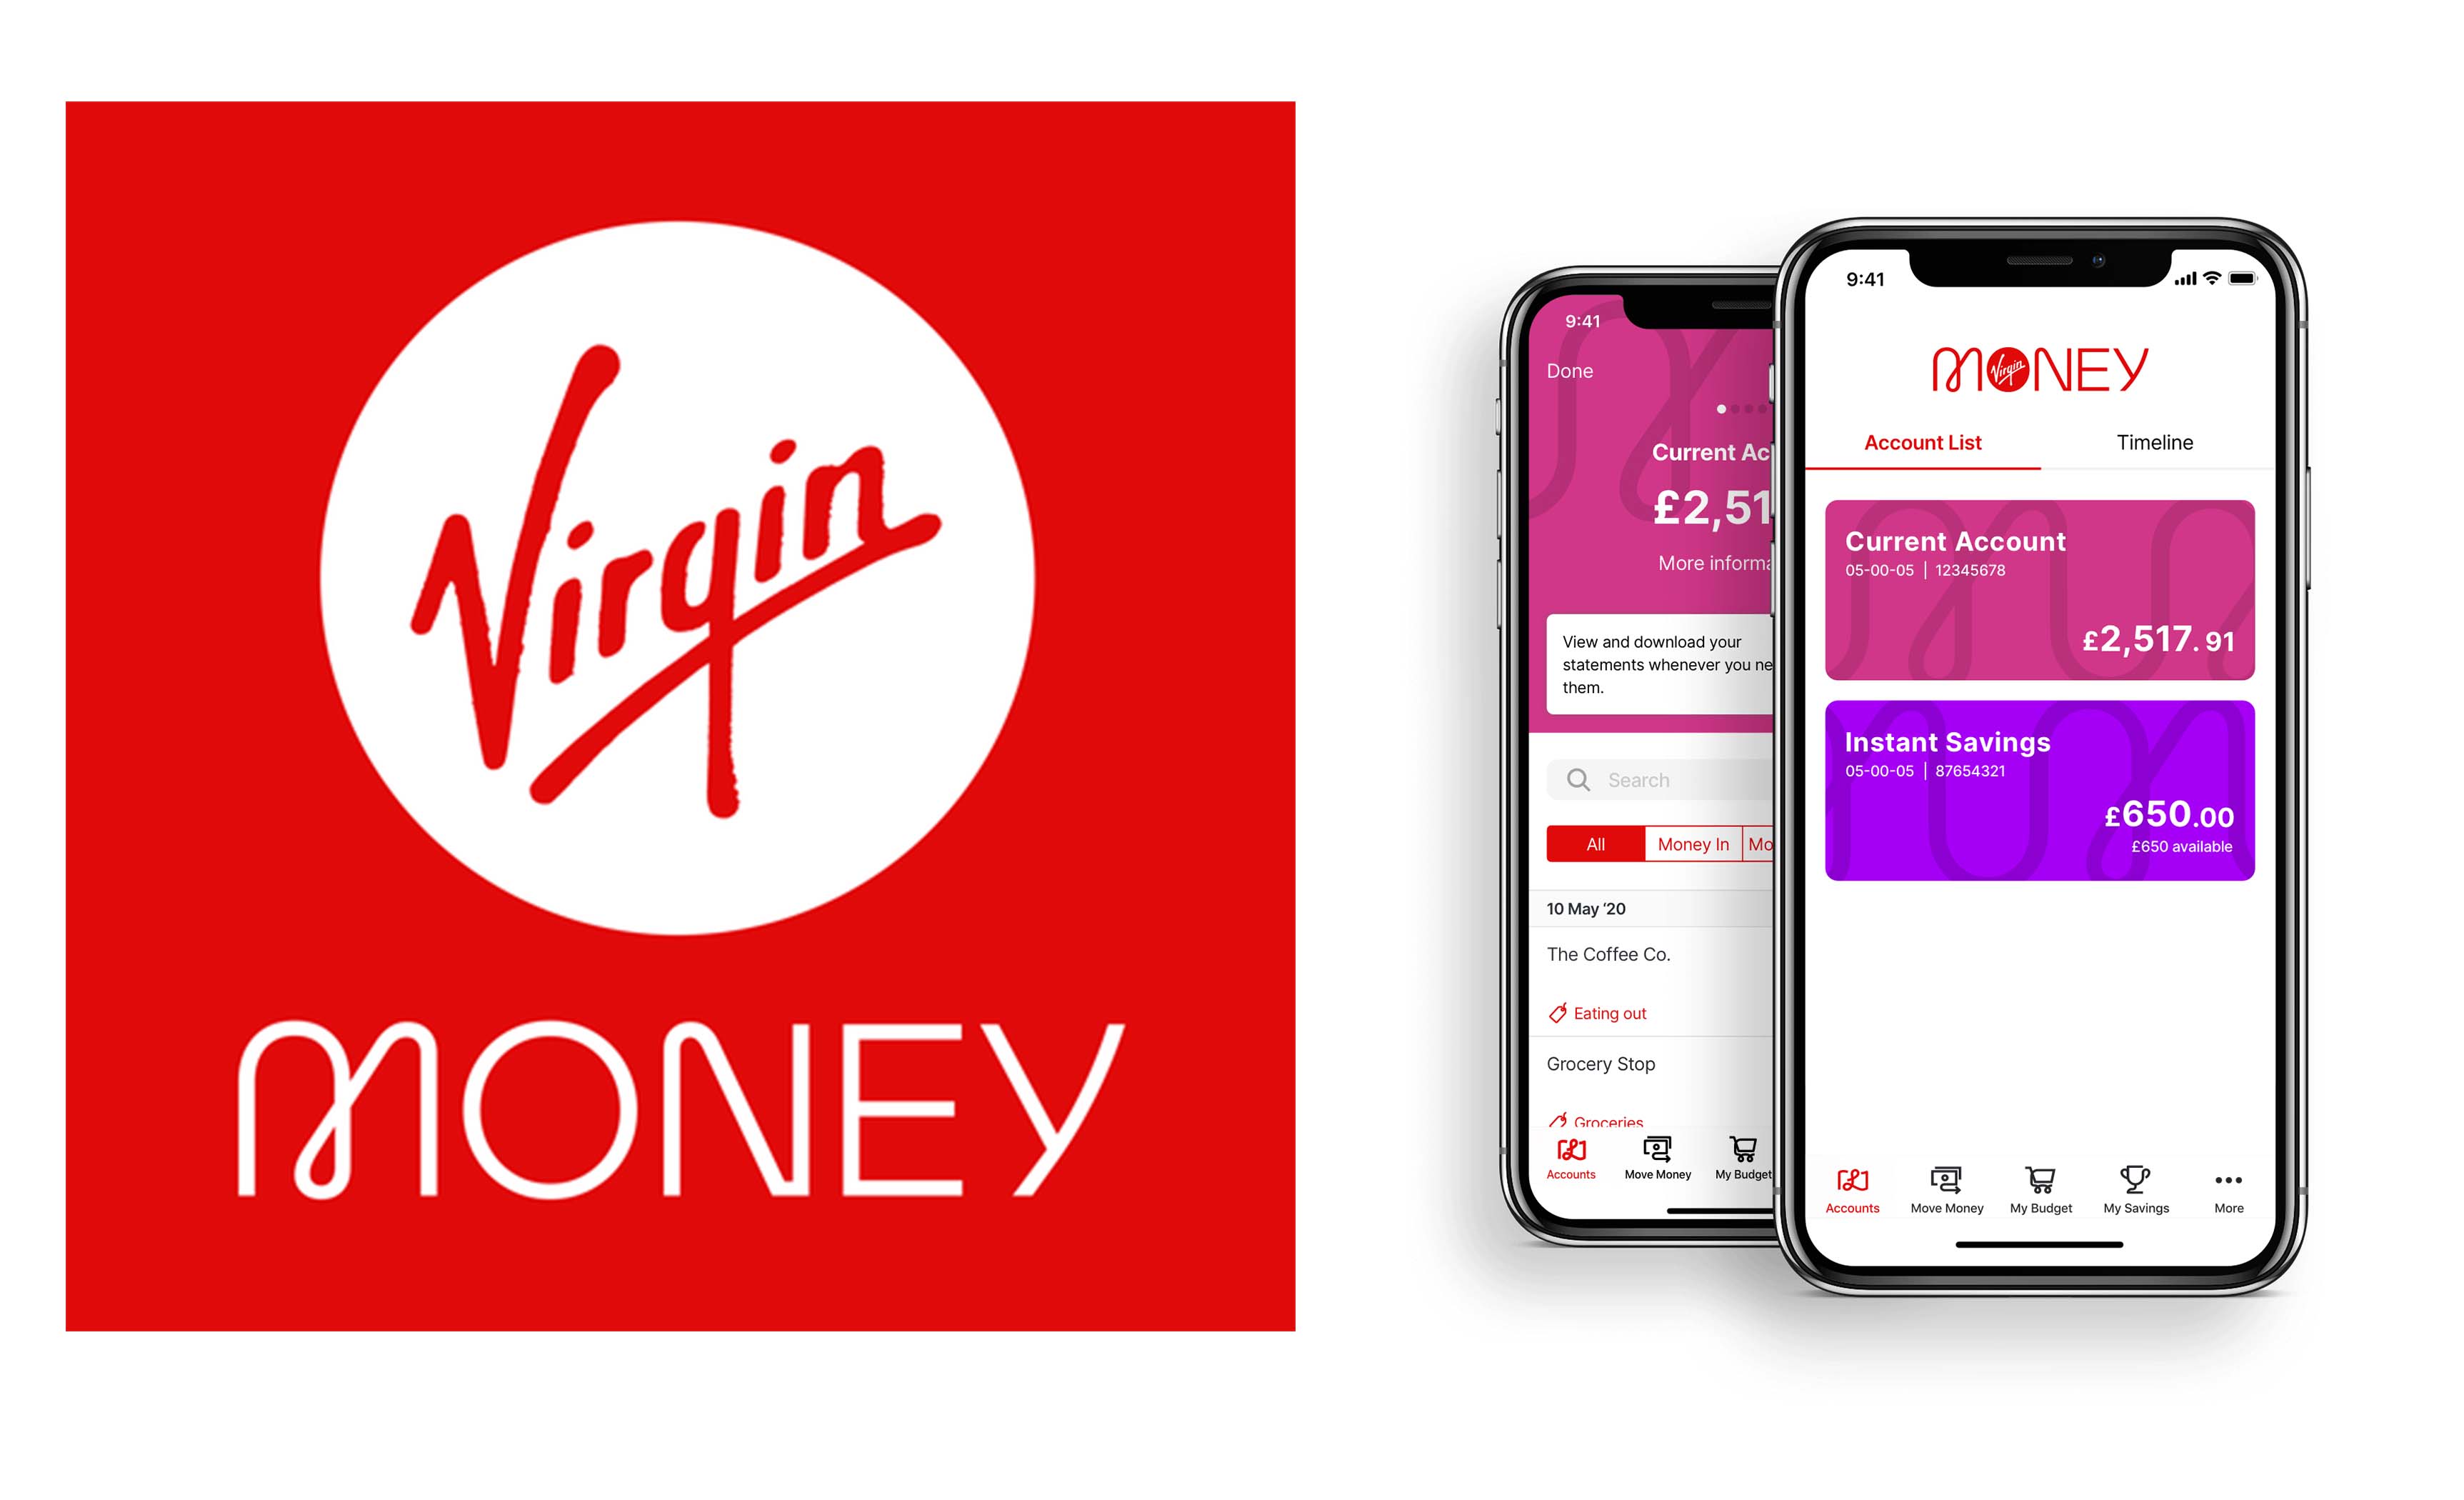 Virgin Money App - Benefits of Banking with Virgin Money